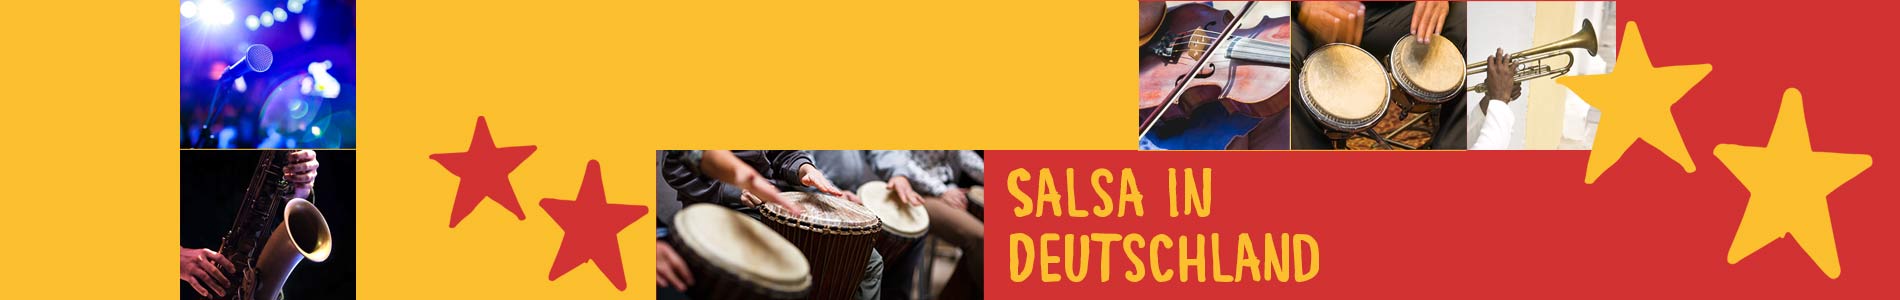 Salsa in Buttstädt – Salsa lernen und tanzen, Tanzkurse, Partys, Veranstaltungen